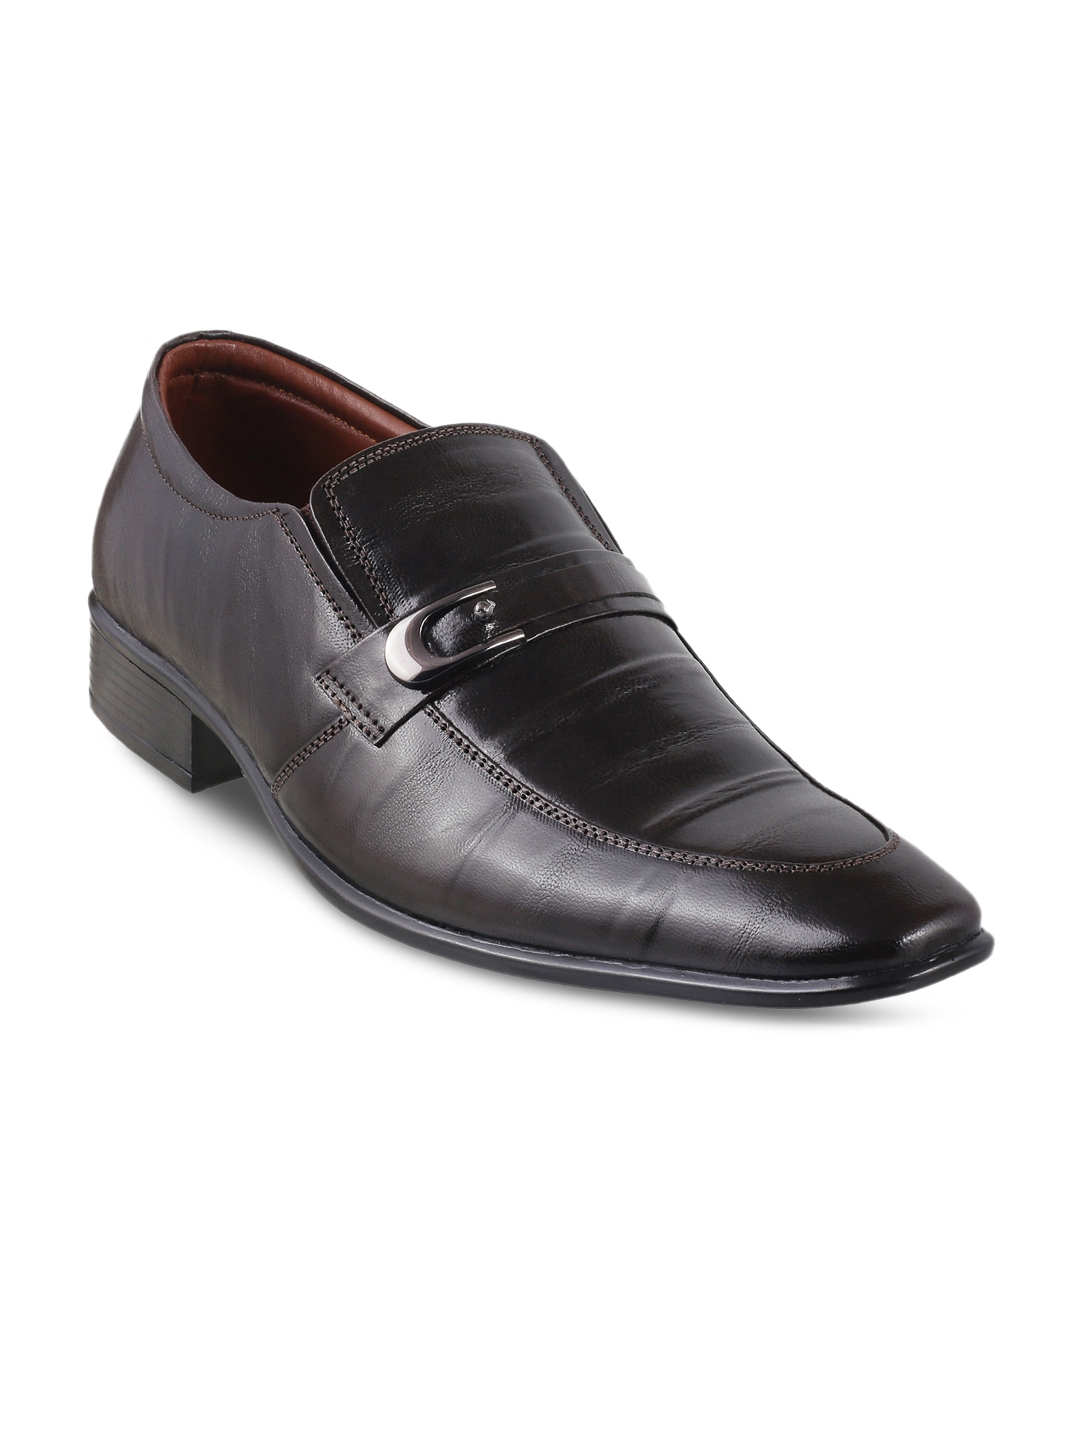 Buy Mochi Men Black Leather Formal Shoes - Formal Shoes for Men 1922596 ...